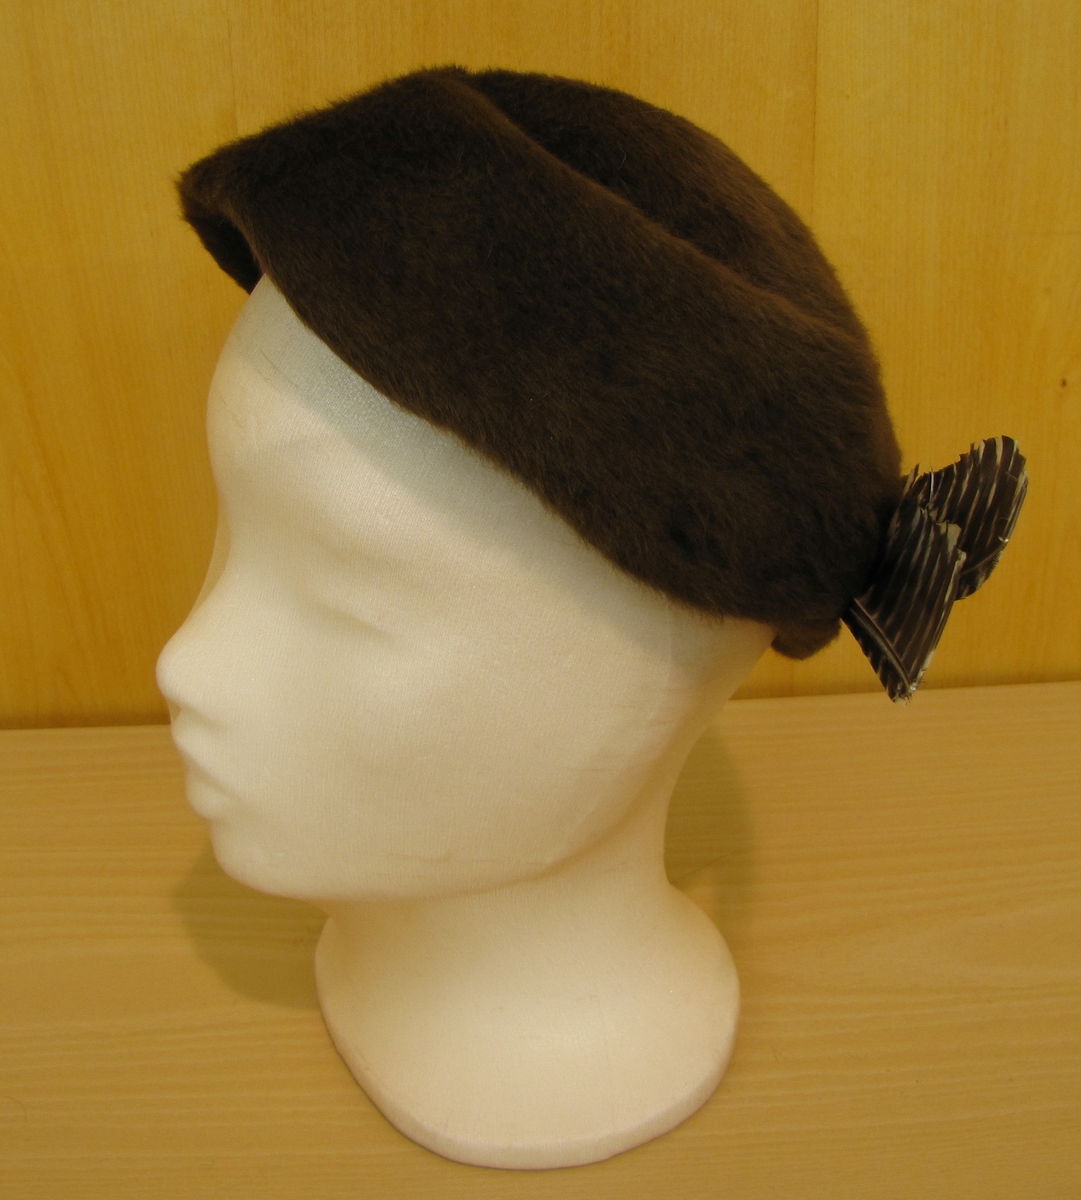 Rundkullig hatt utan brätte monterad med 2 bruna och vitspräckliga fjäderpennor.
Inköpt hos Strands eftr. Vänersborg.